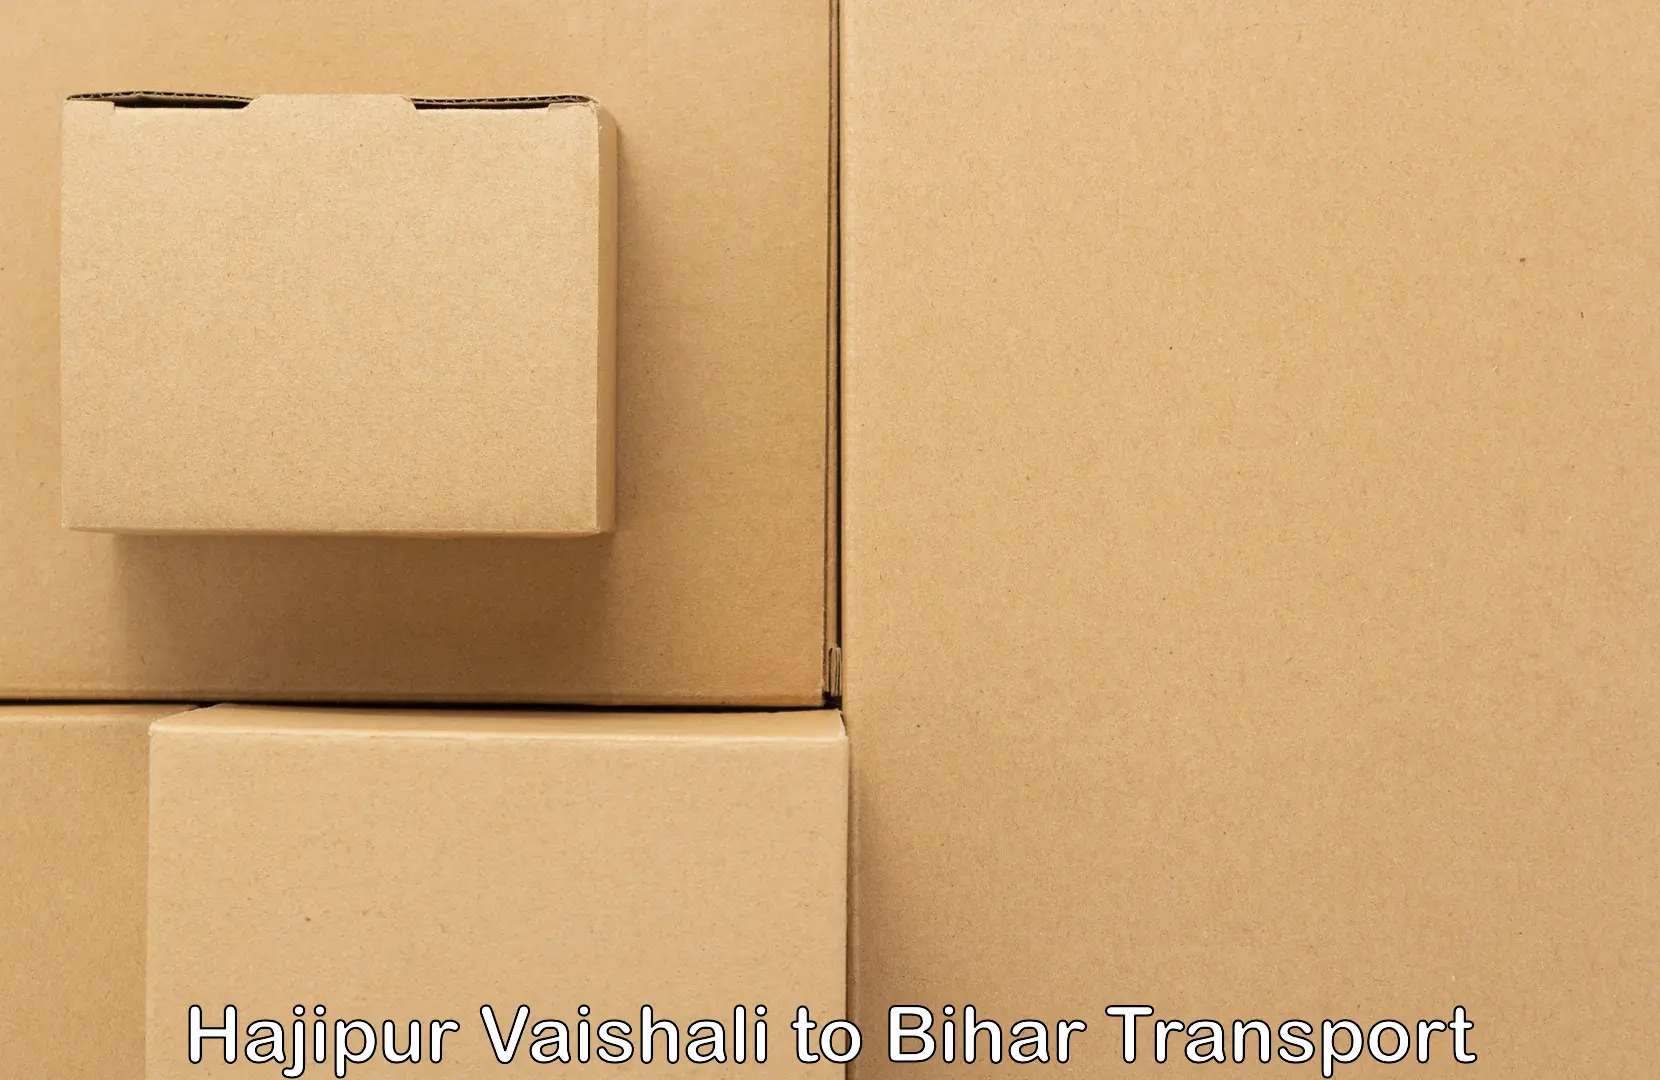 Land transport services Hajipur Vaishali to Jagdishpur Bhojpur